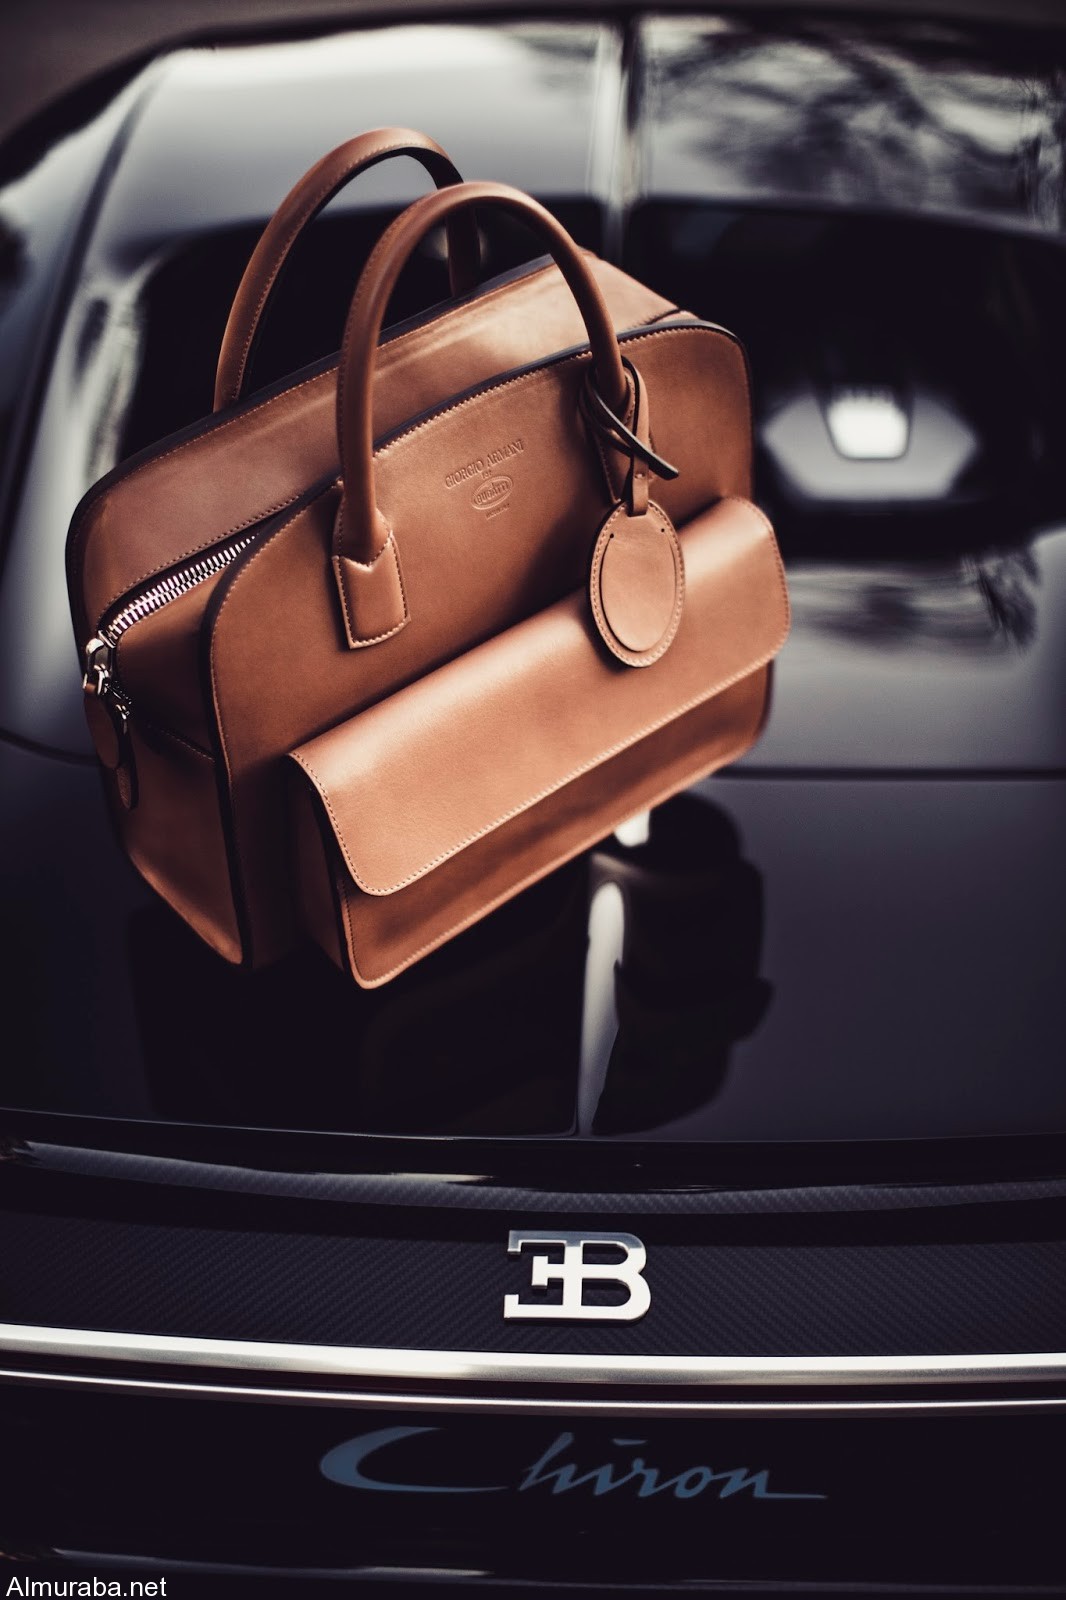 “بوجاتي” تتعاون مع شركة أرماني الإيطالية لصنع أزياء واكسسوارات فاخرة Bugatti